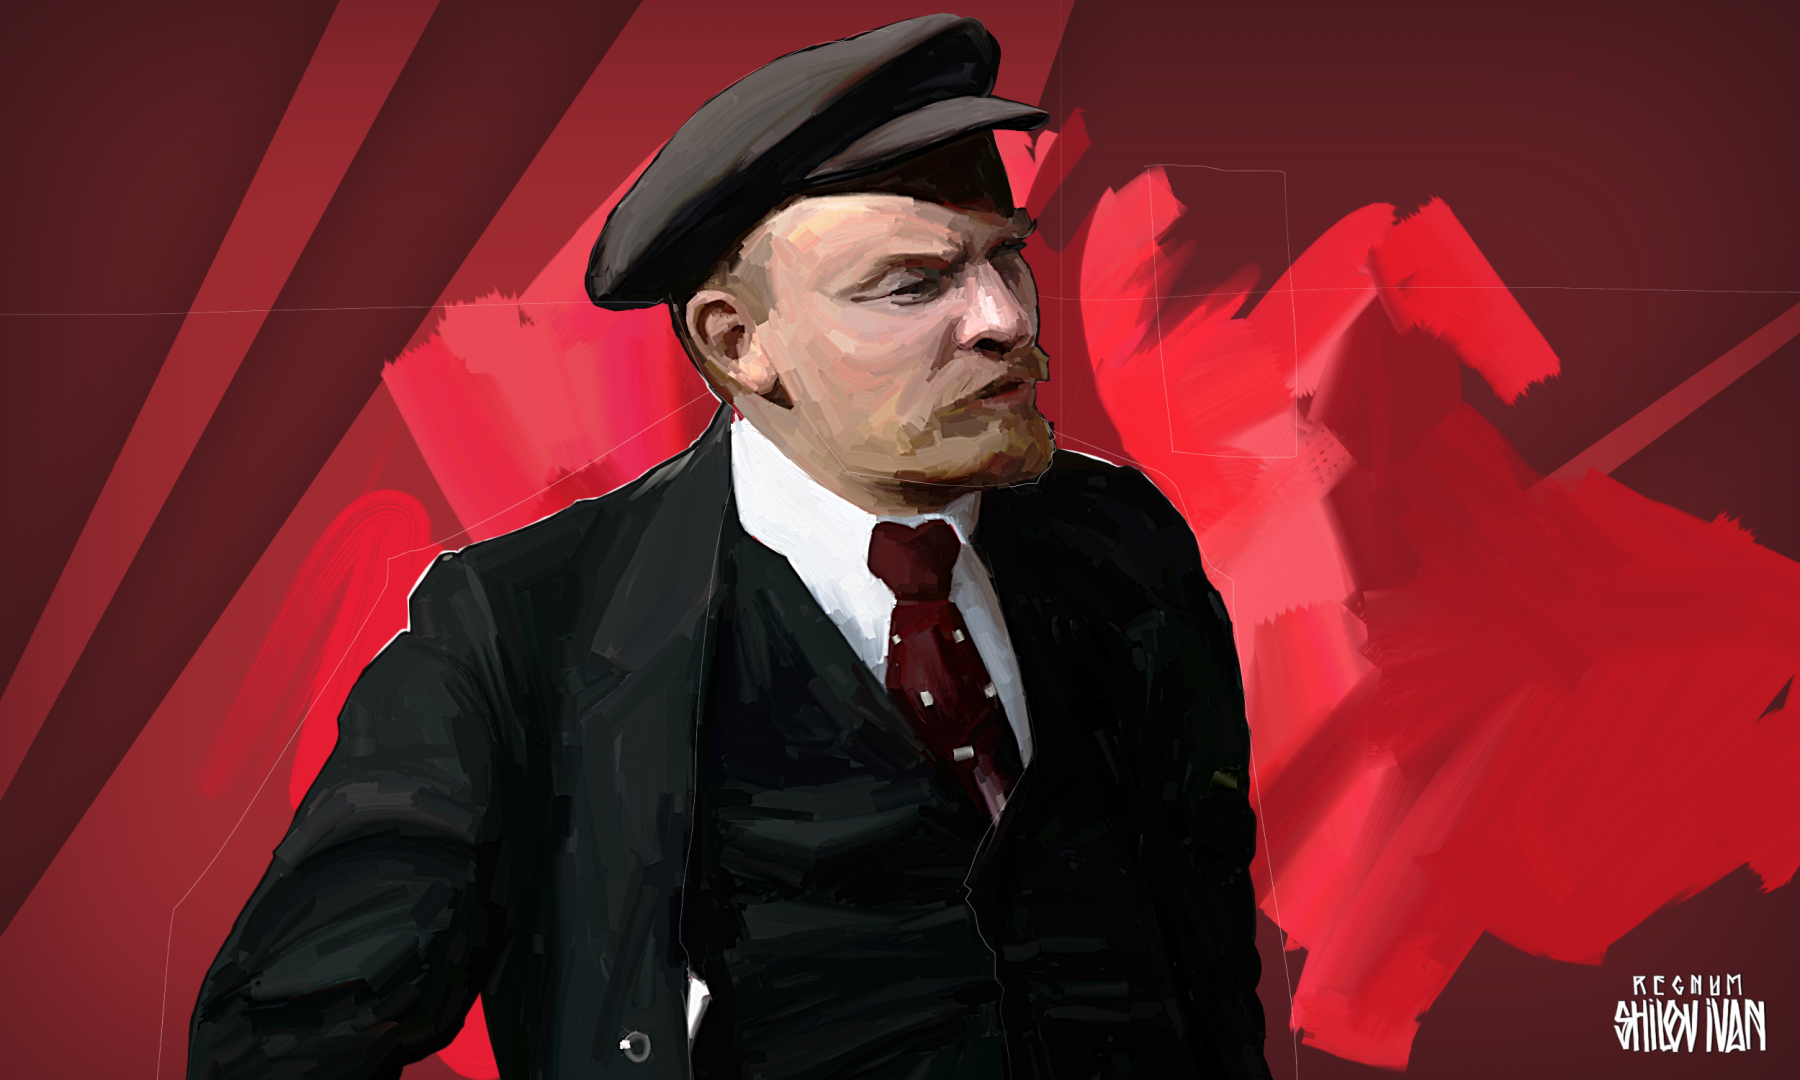 Ленин в галстуке